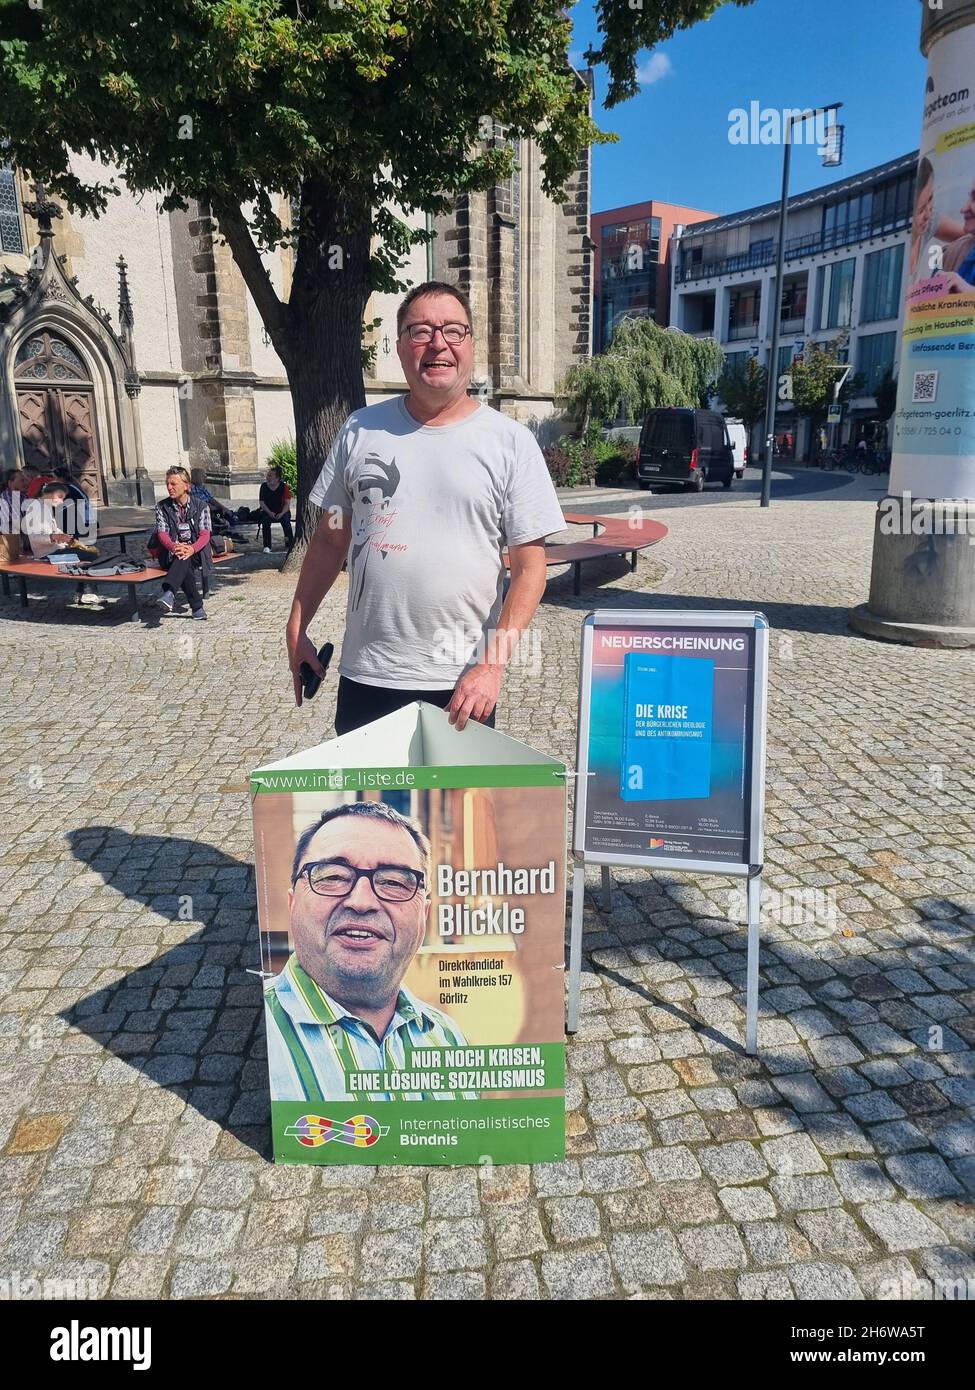 Bernhard Blickle , MLPD, Sozialistische Internationale, wahlkampf in Görlitz am 08.09.2021 Stock Photo